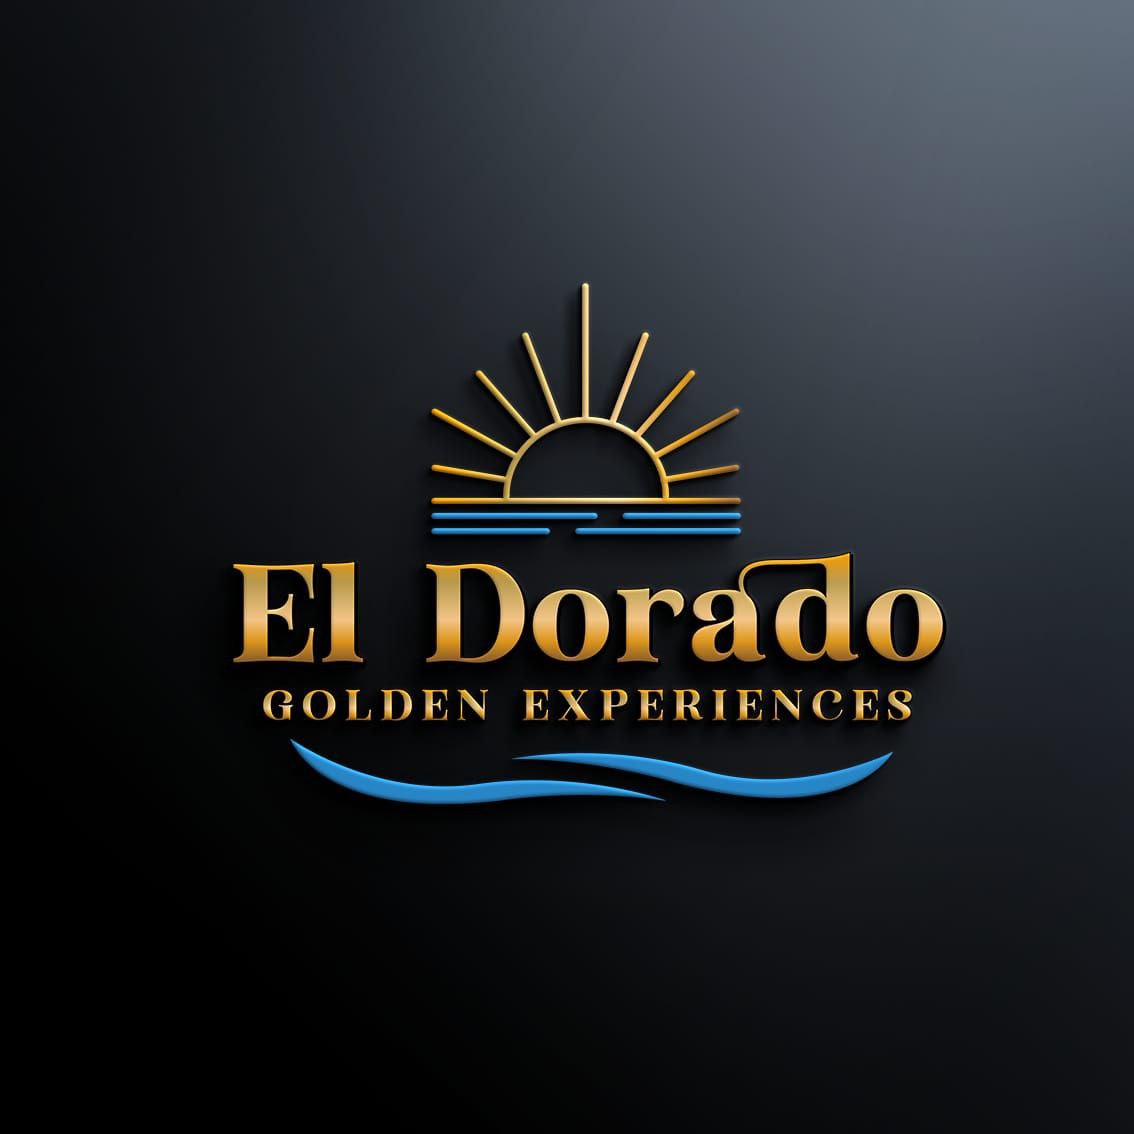 El Dorado Golden Experiences